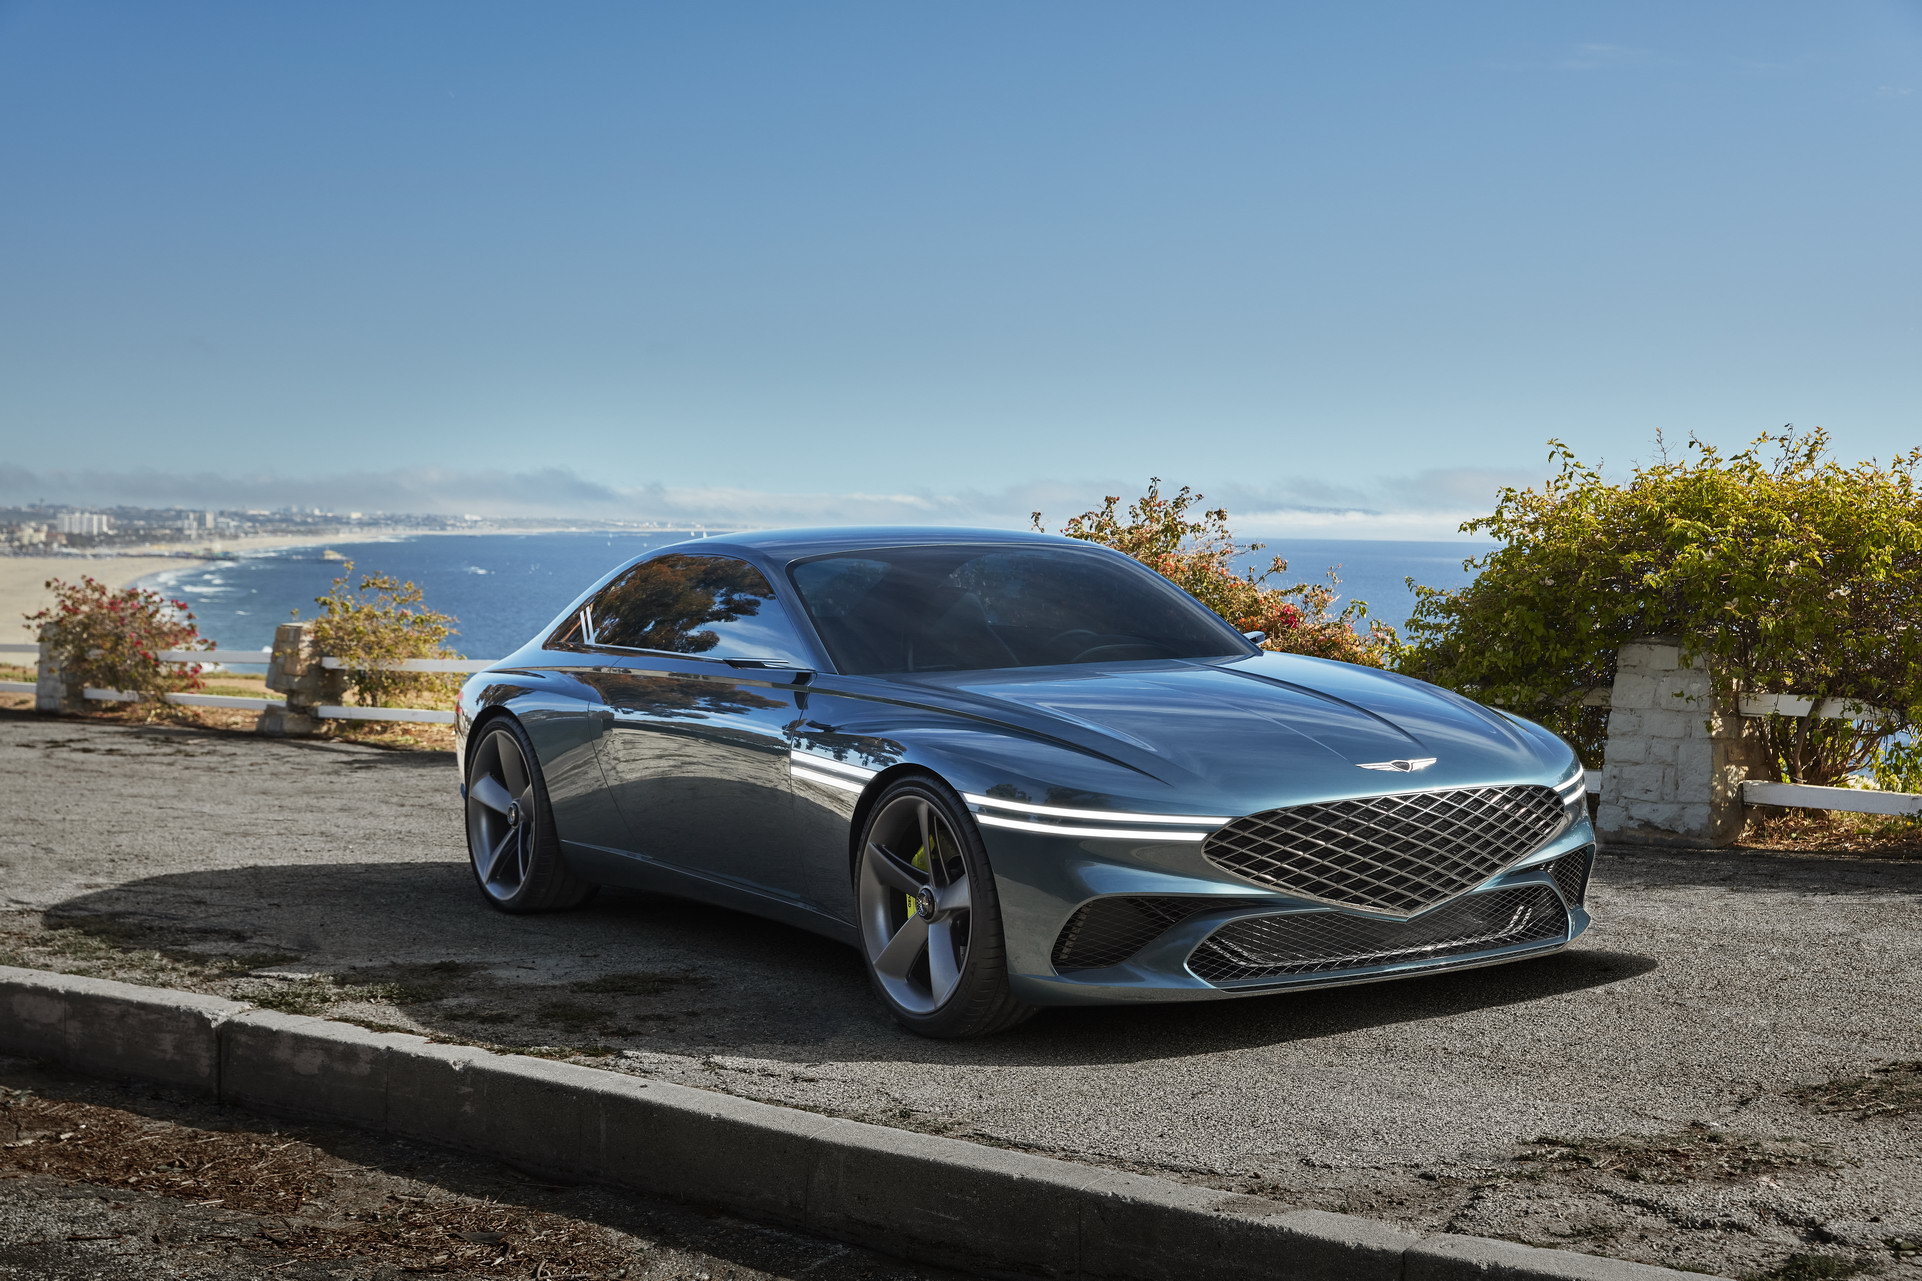 Ra mắt Genesis X Coupe Concept - Xe sang Hàn ngày càng đẹp lên trông thấy - Ảnh 1.